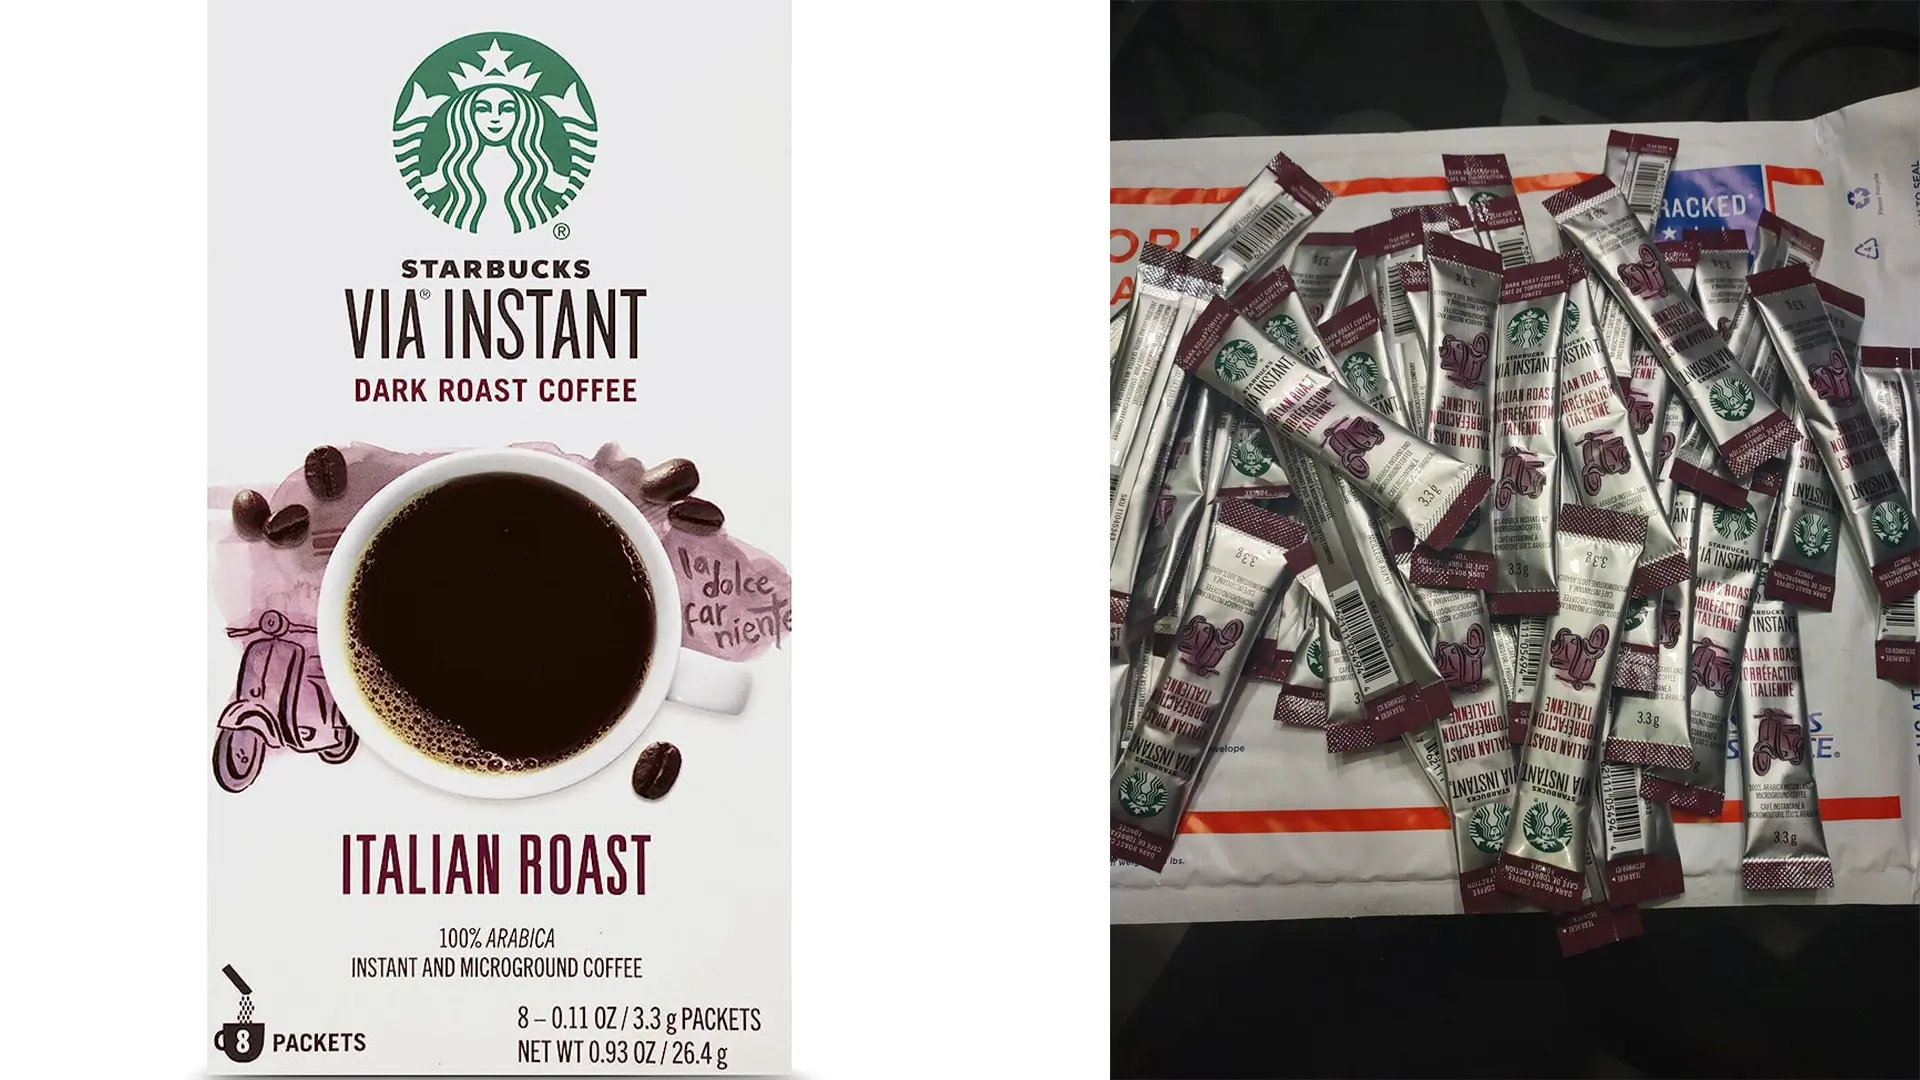 Starbucks Via Instant Italian Roast Dark Roast Coffee